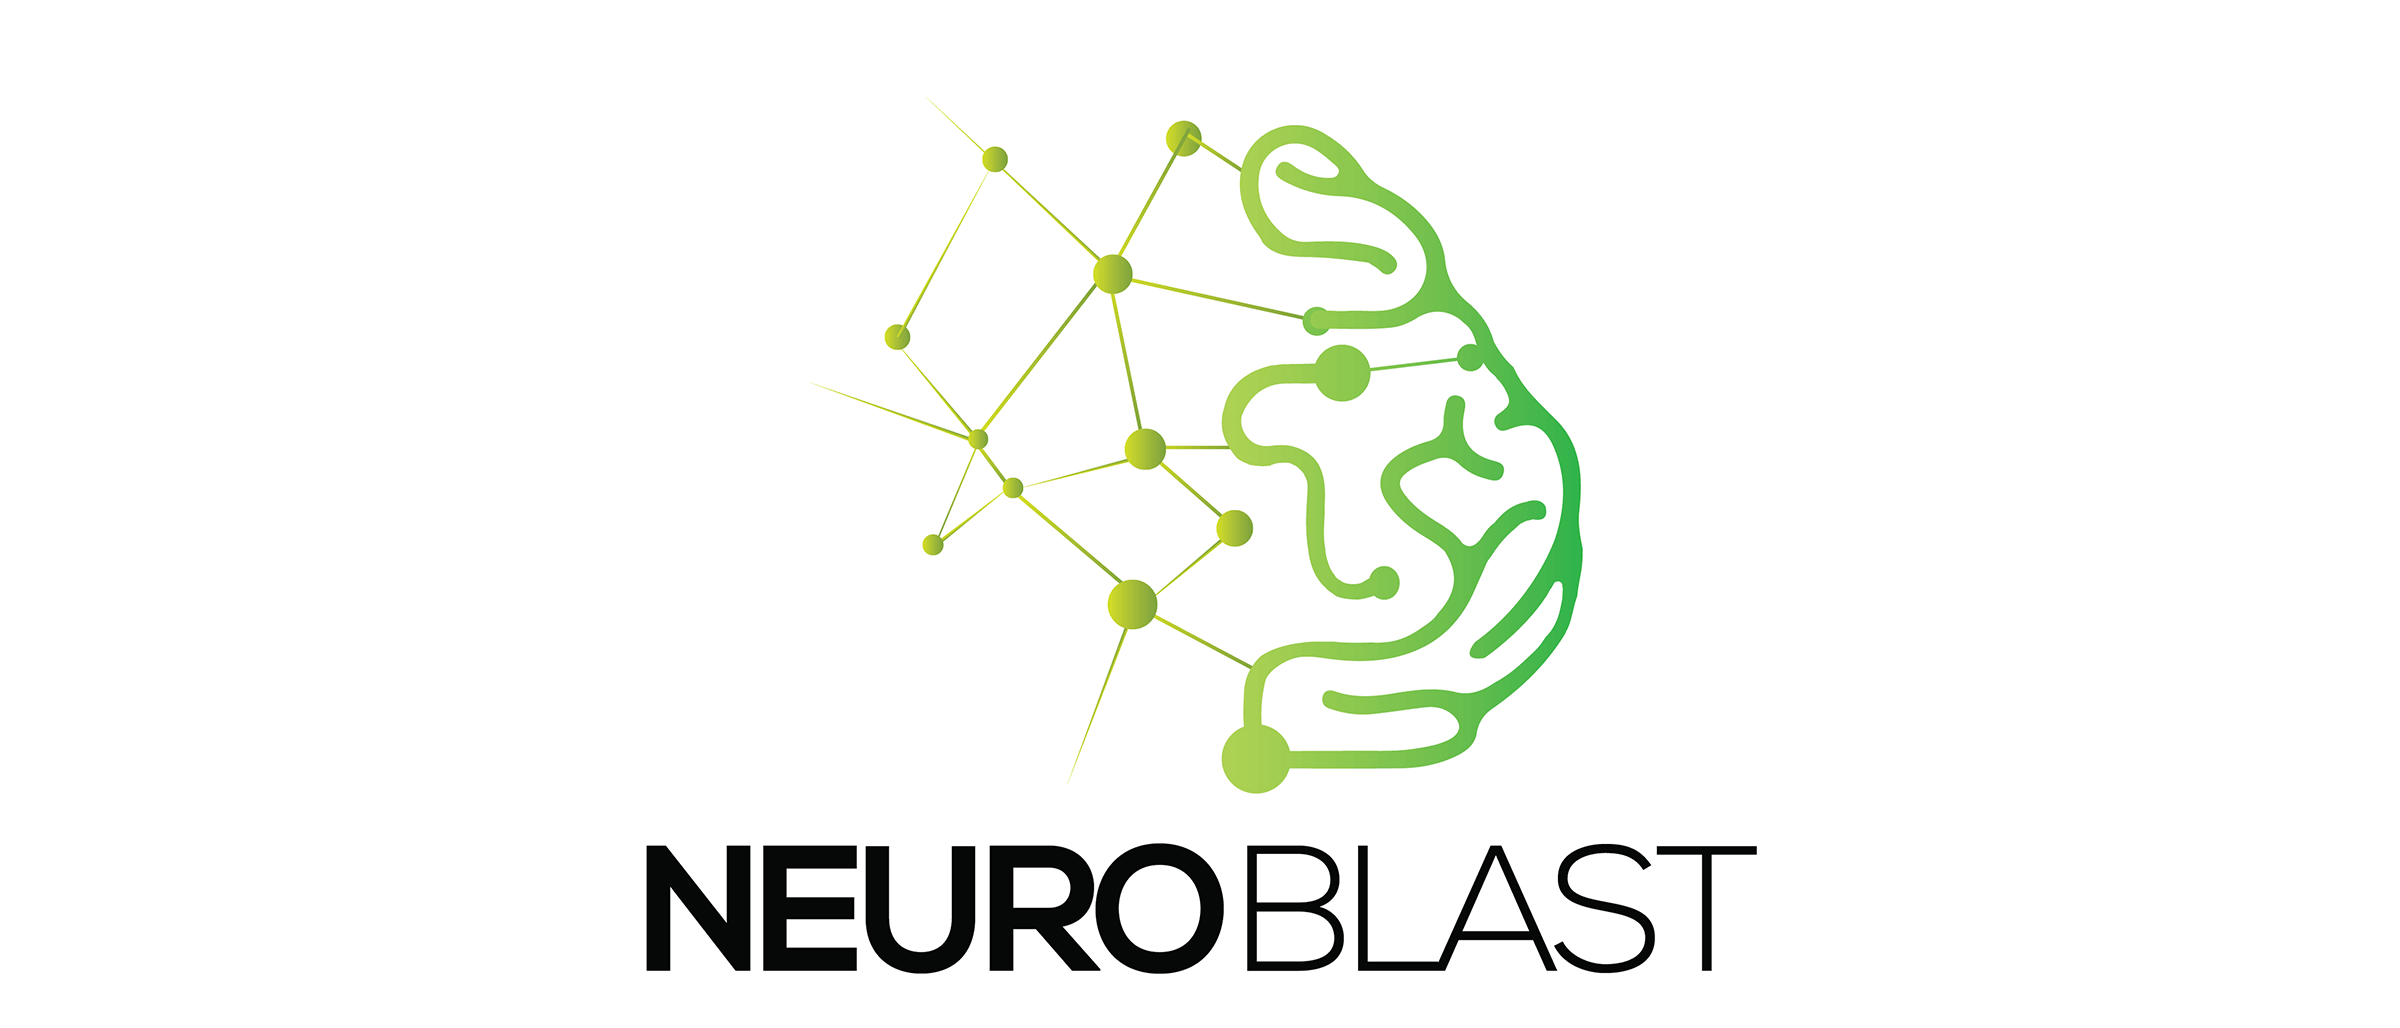 NEUROBLAST: IT подршка за нервни систем